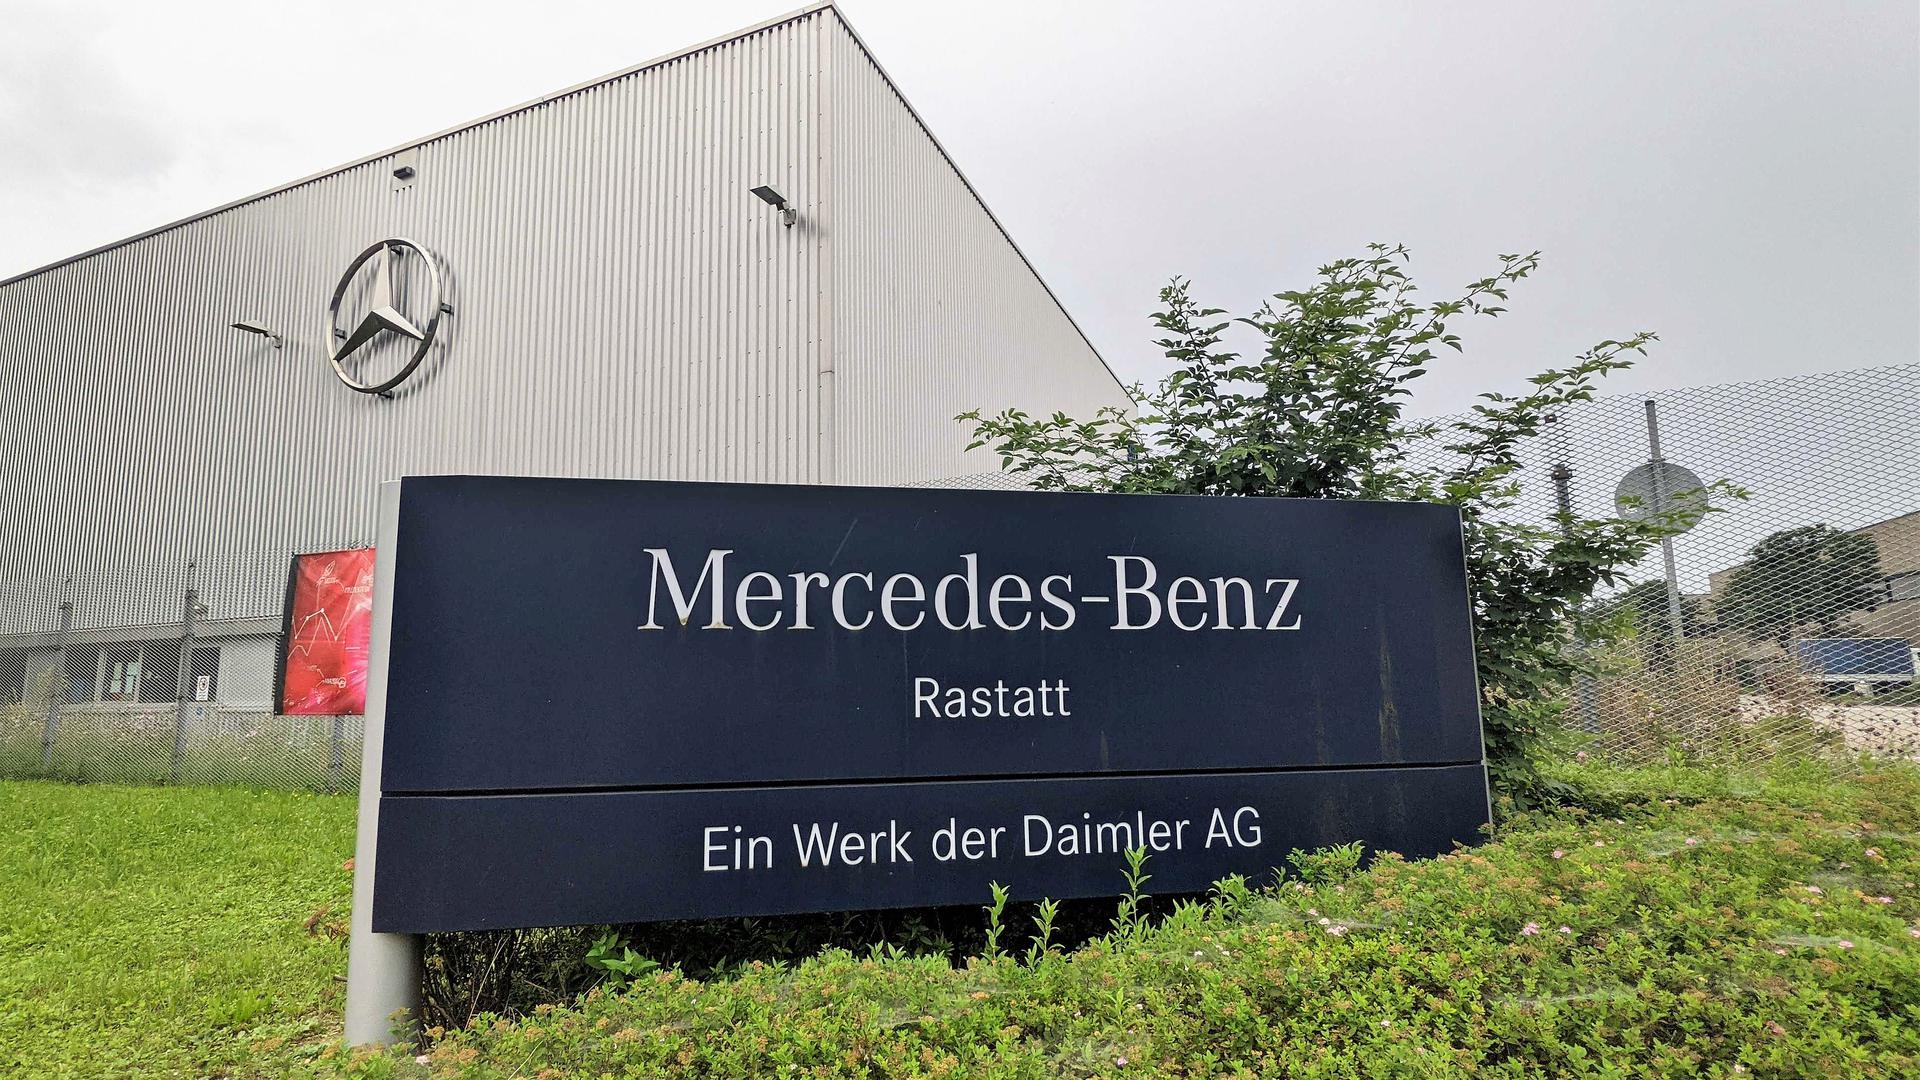 Produktion heruntergefahren: Das Werk Mercedes-Benz in Rastatt leidet unter der weltweiten Halbleiter-Beschaffungskrise.